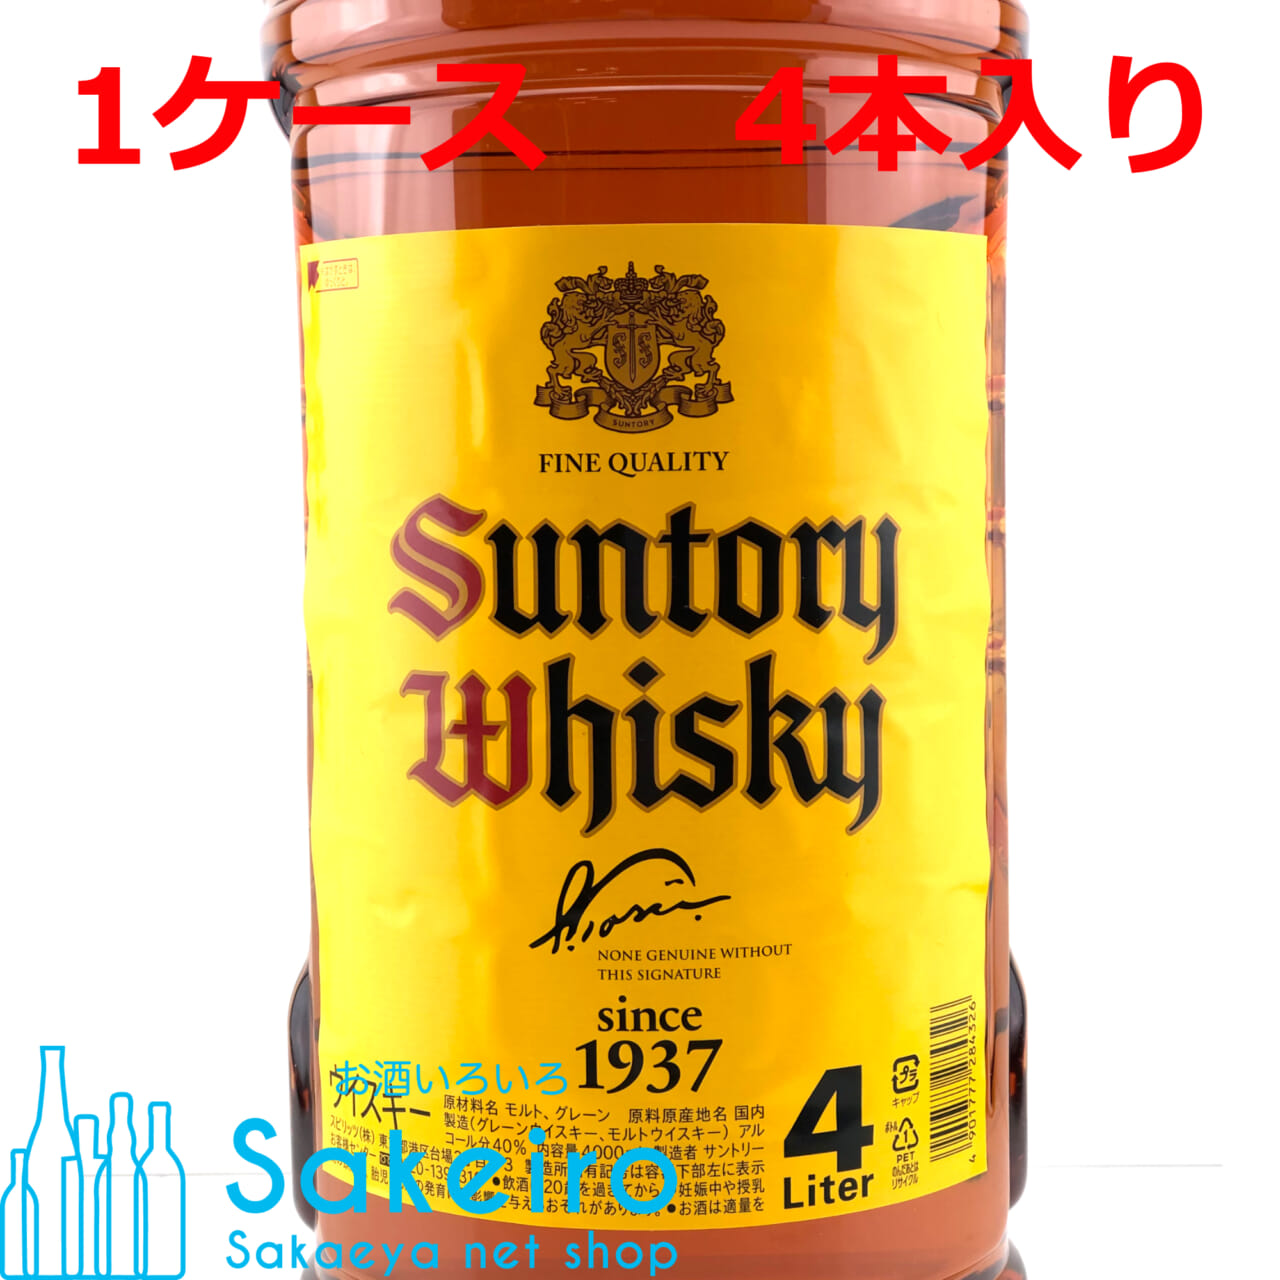 サントリー 角瓶 40％ 4000ml ペットボトル 4本入り 1ケース - お酒いろいろ Sakeiro -Sakaeya net shop-